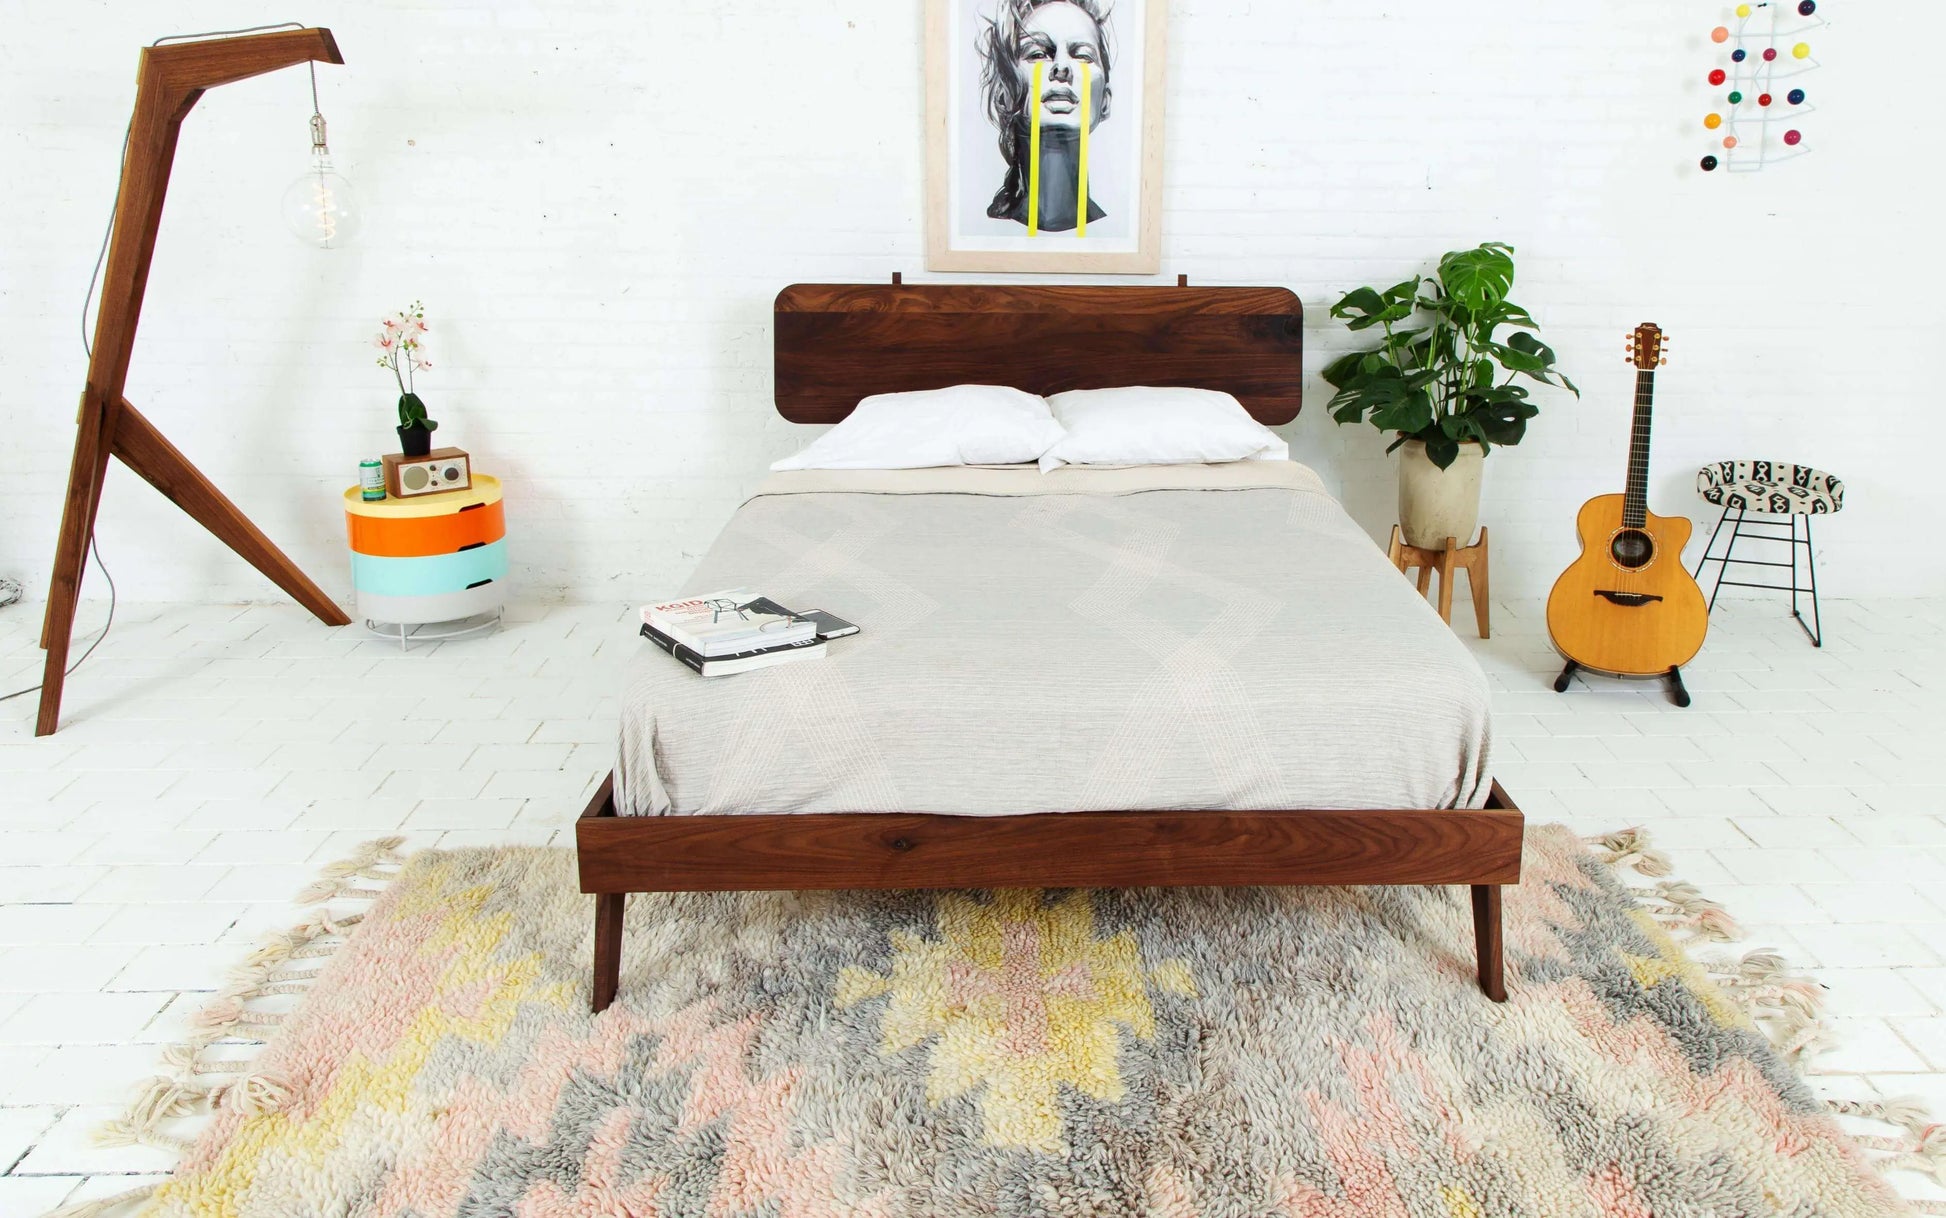 "Minimalist design modern walnut bed frame"